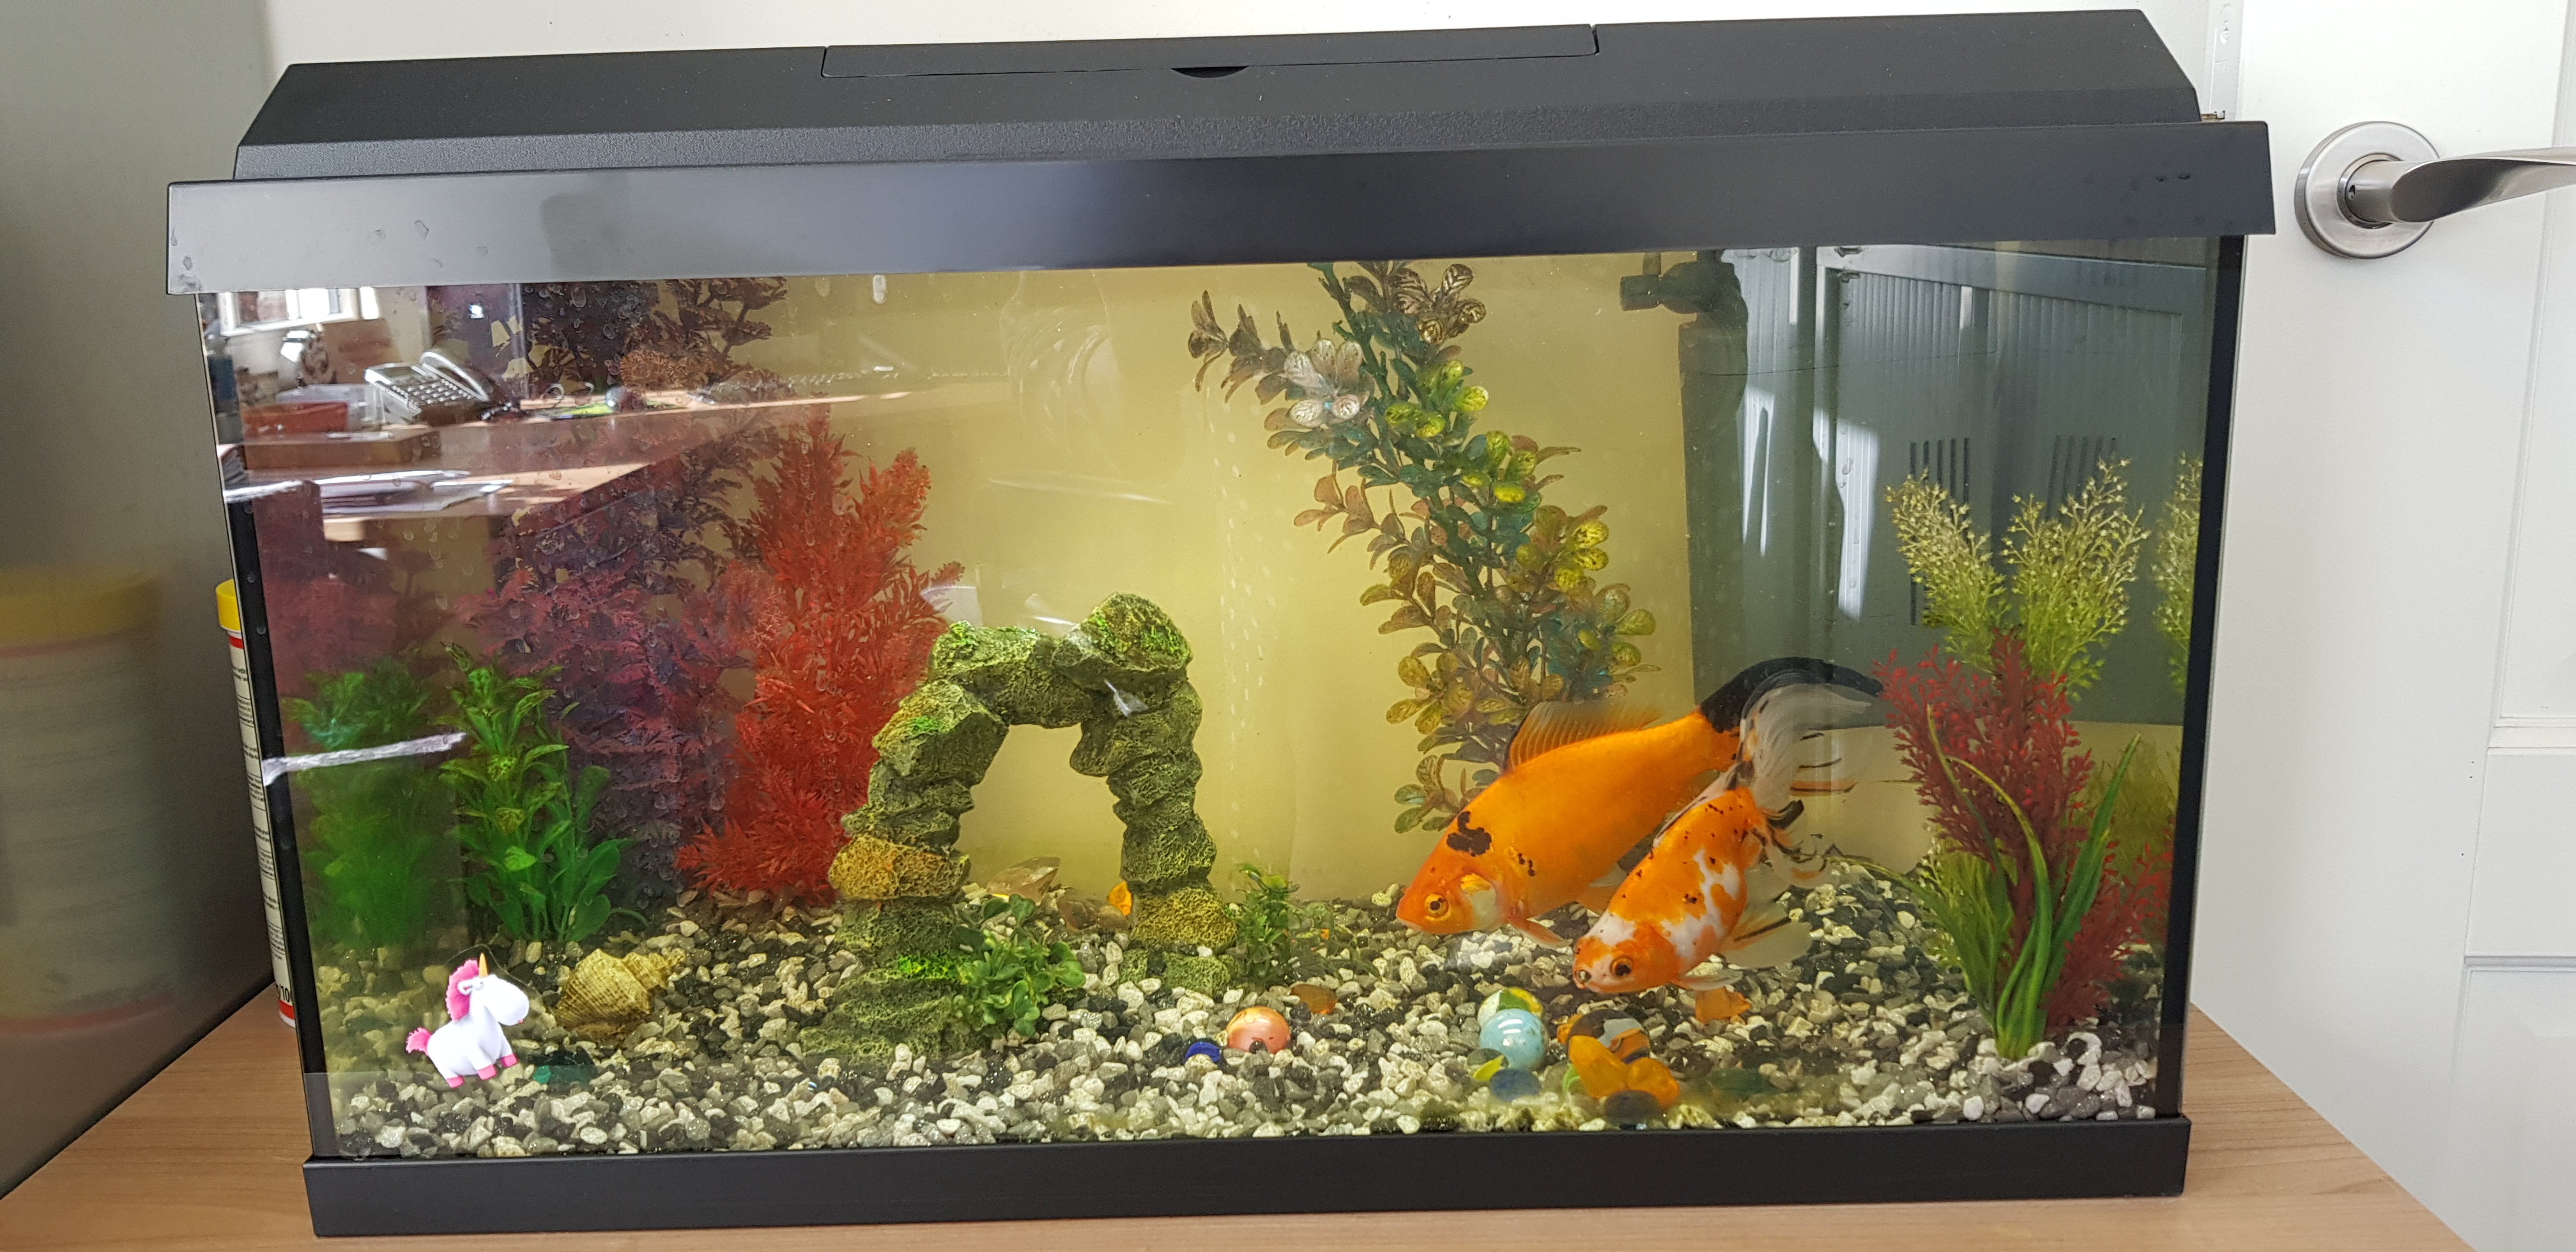 Is 65 liter aquarium te klein voor goudvissen? - GoeieVraag